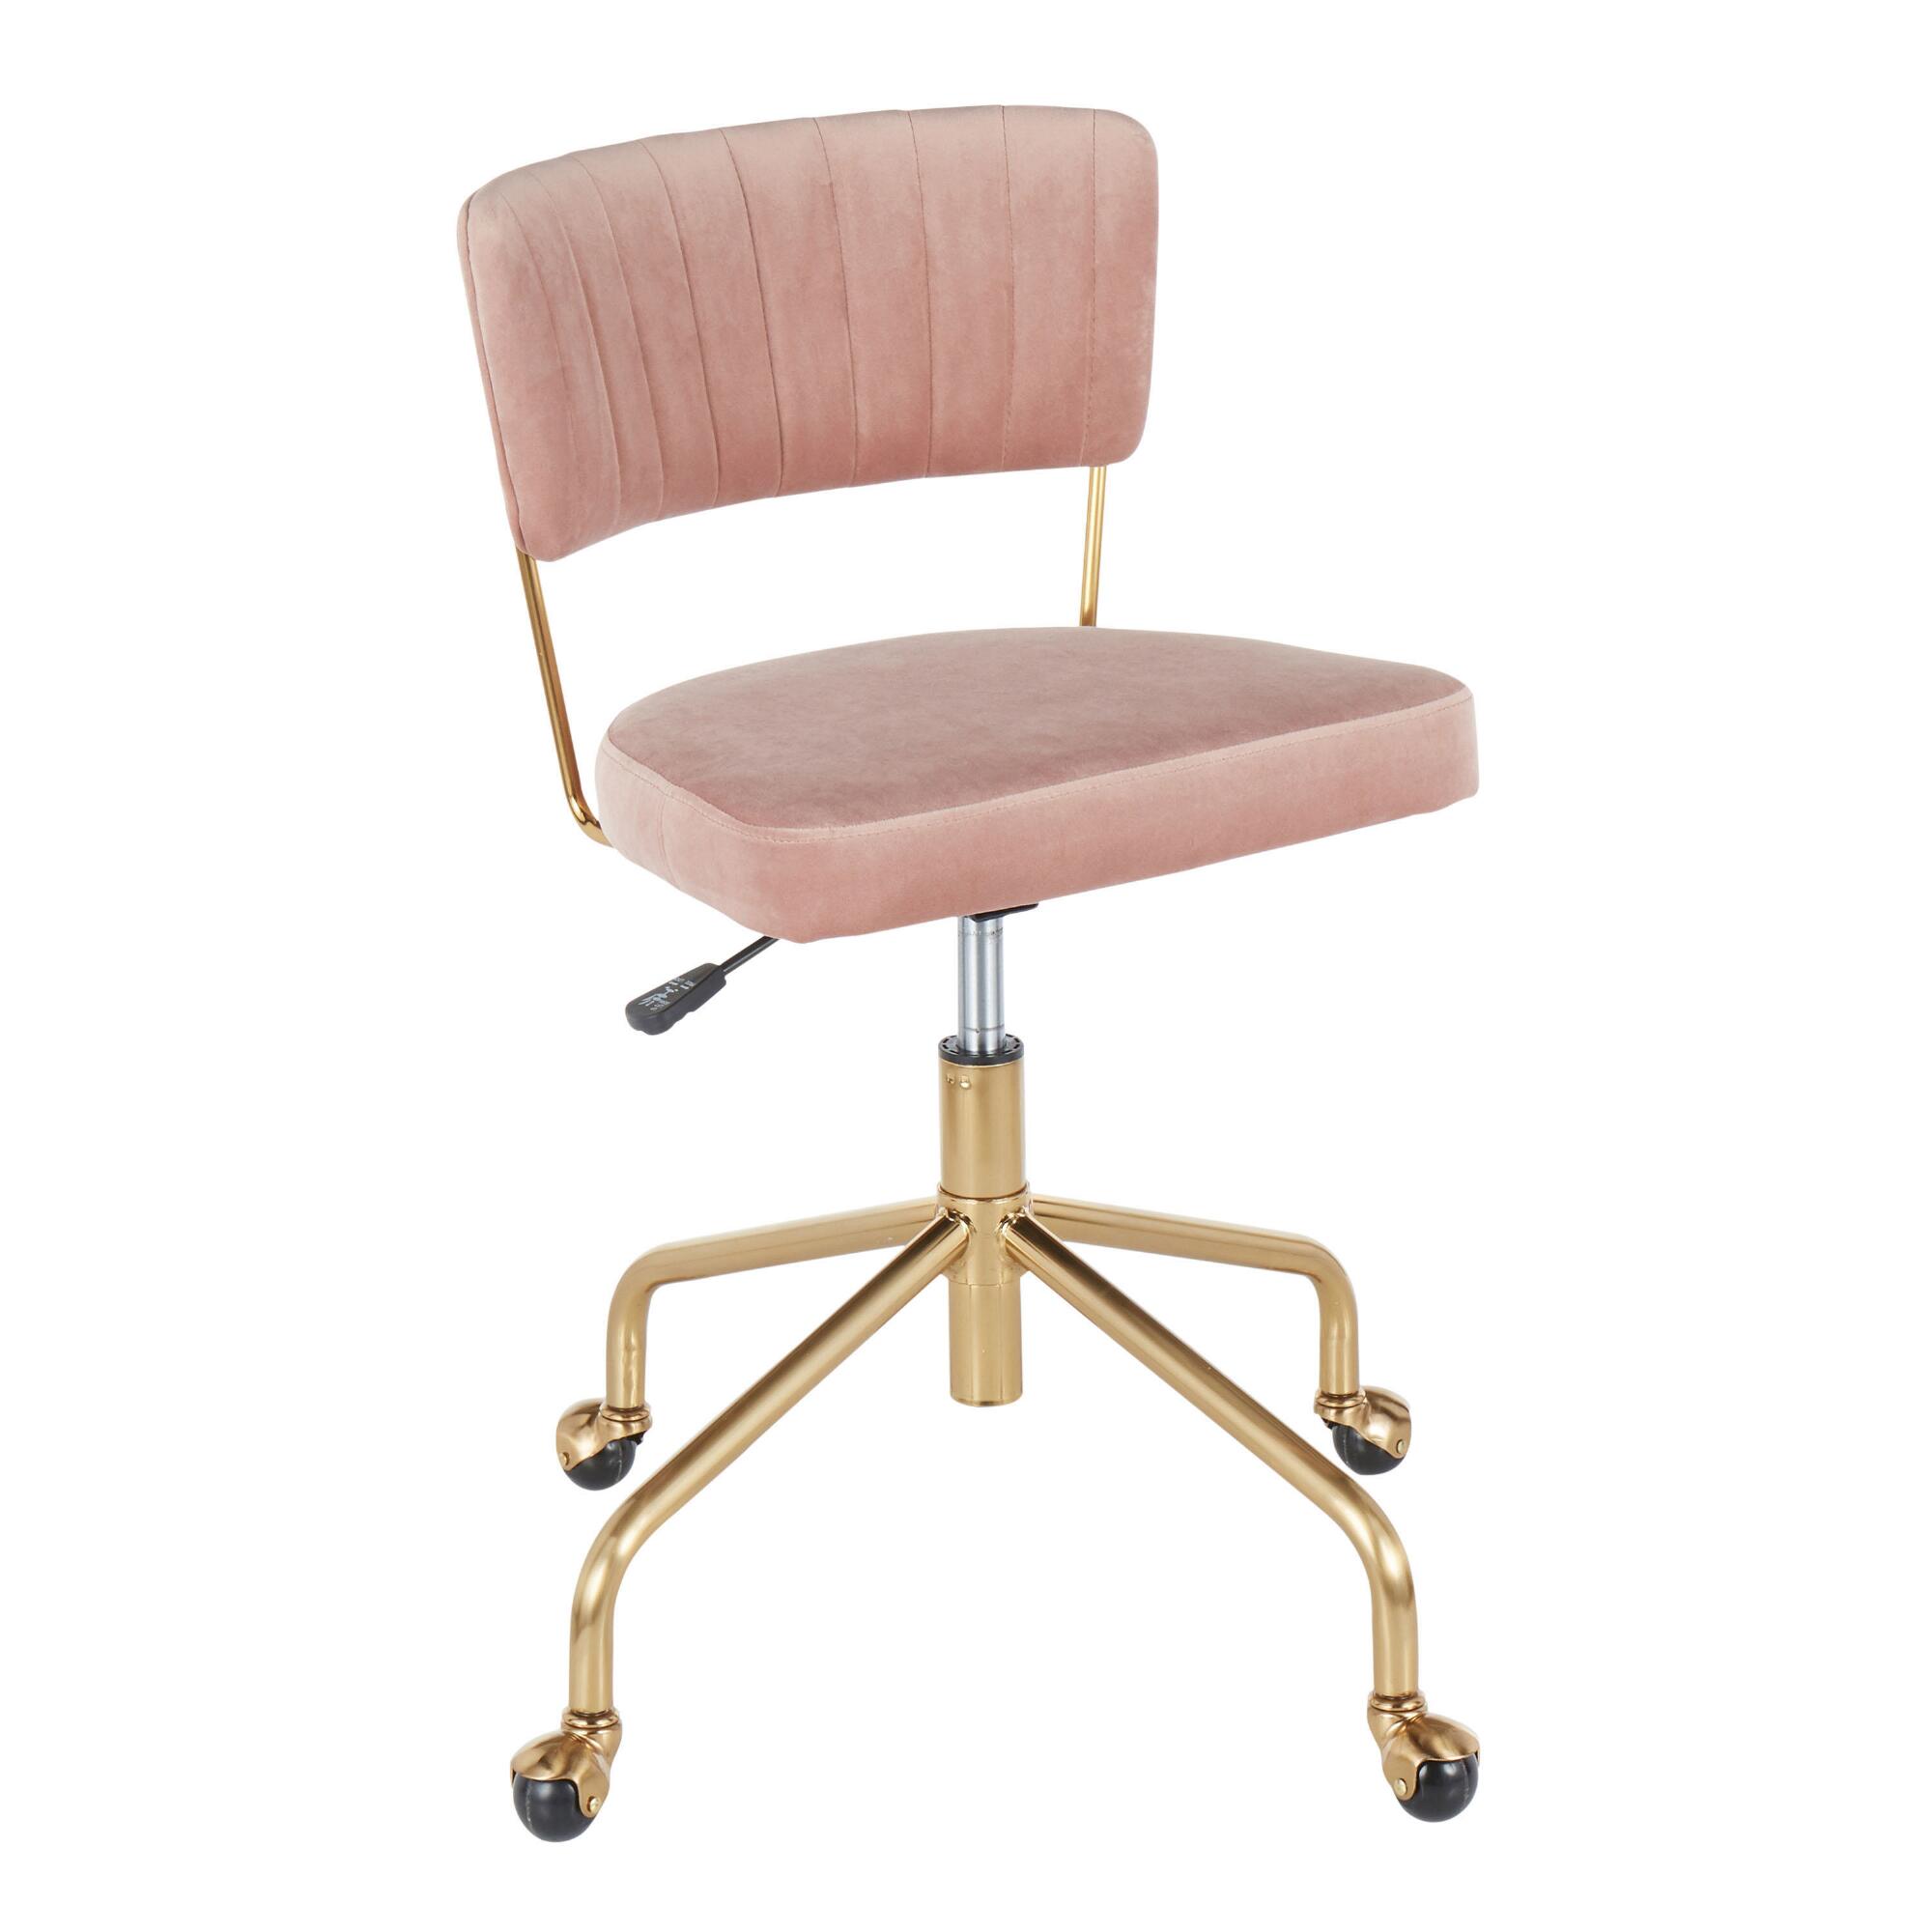 Velvet Mia Upholstered Home Office Chair: White - Fabric by World Market